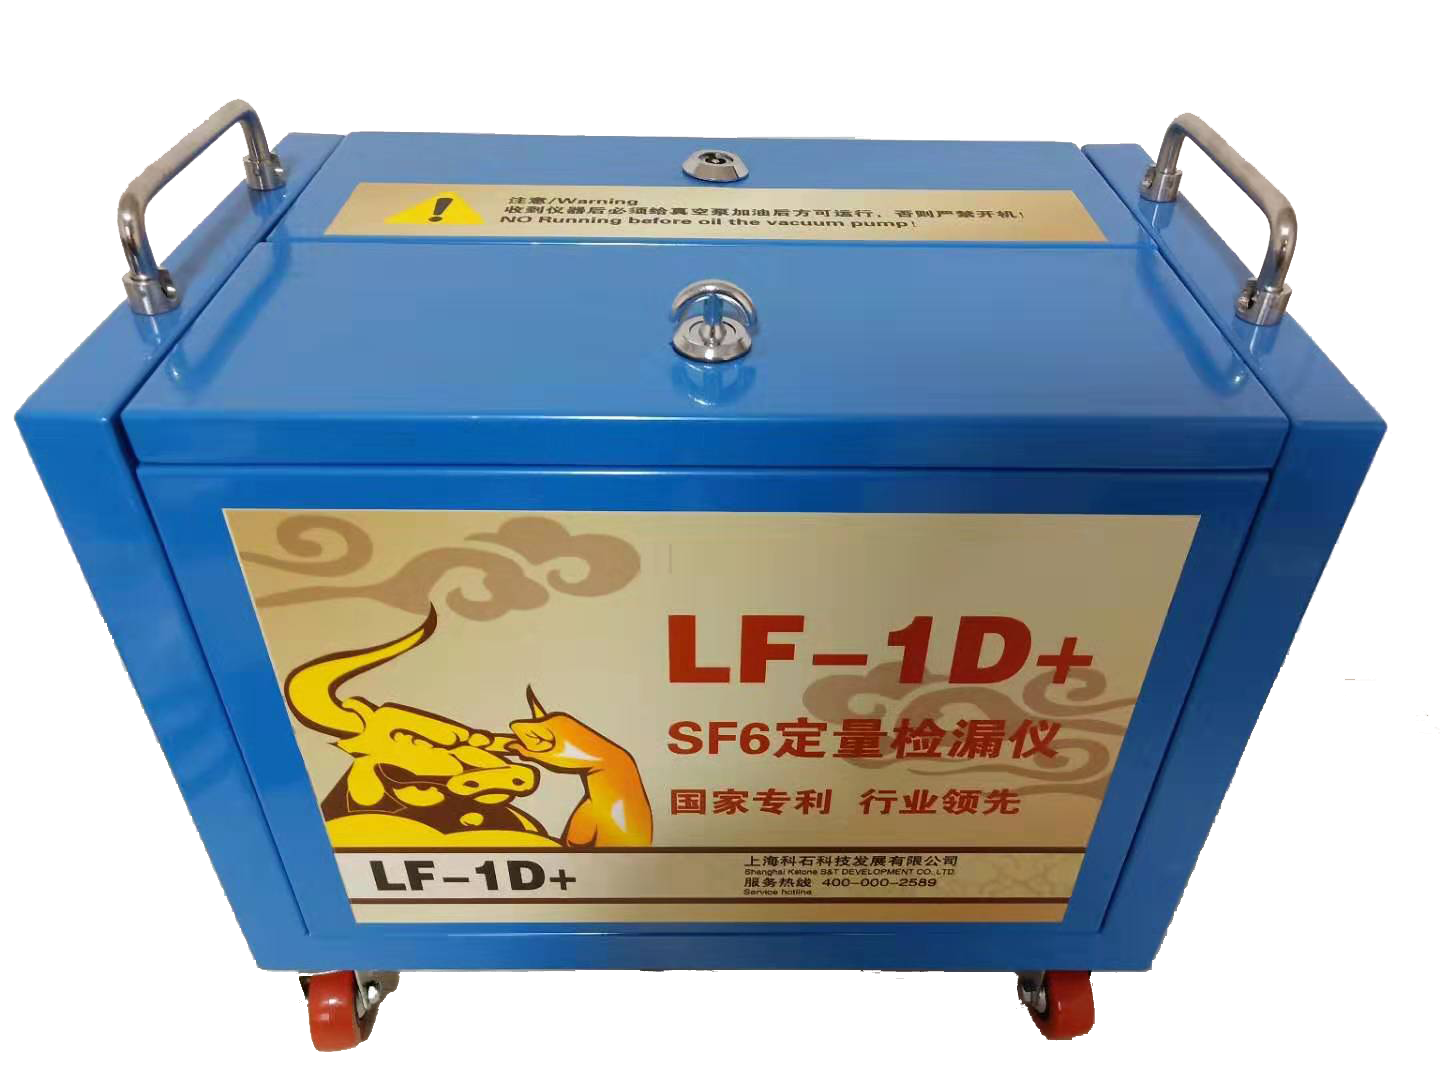 LF-1D+ SF6定量检漏仪